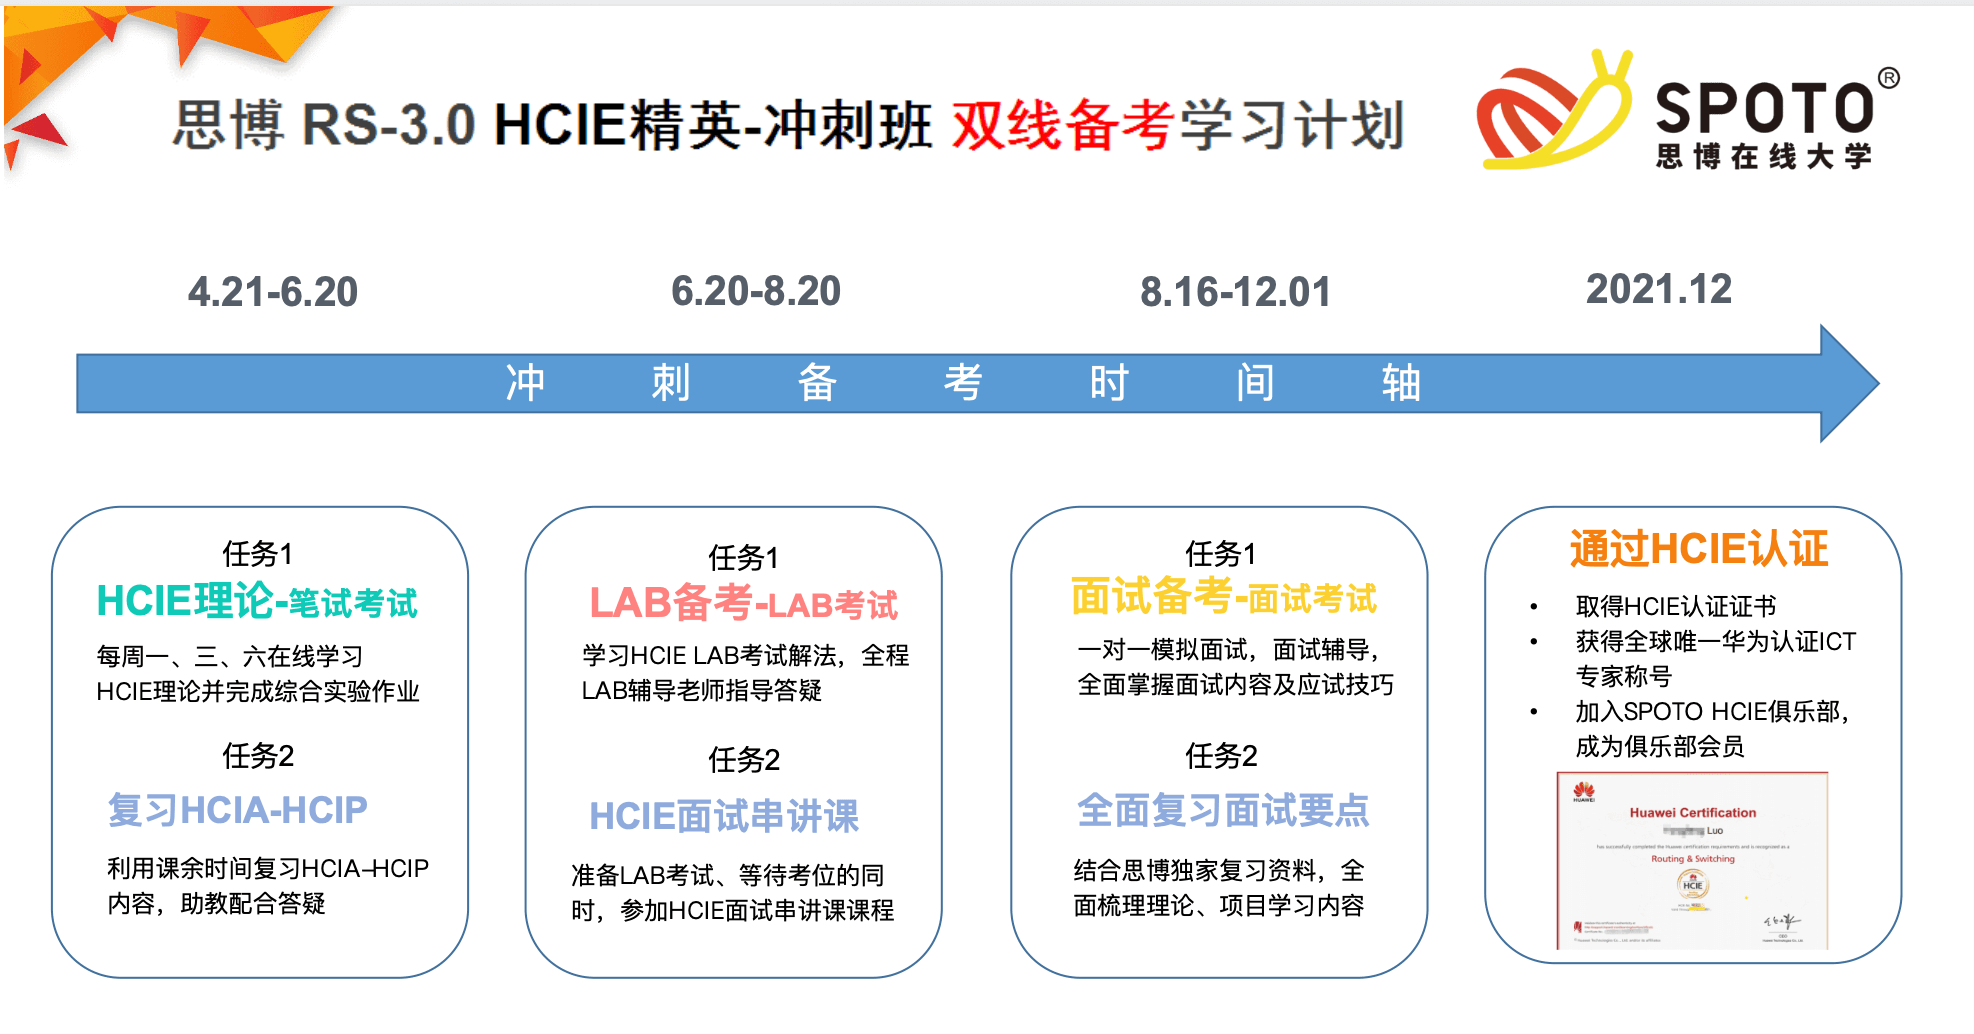 思博RS-3.0 HCIE精英-冲刺班双线备考学习计划